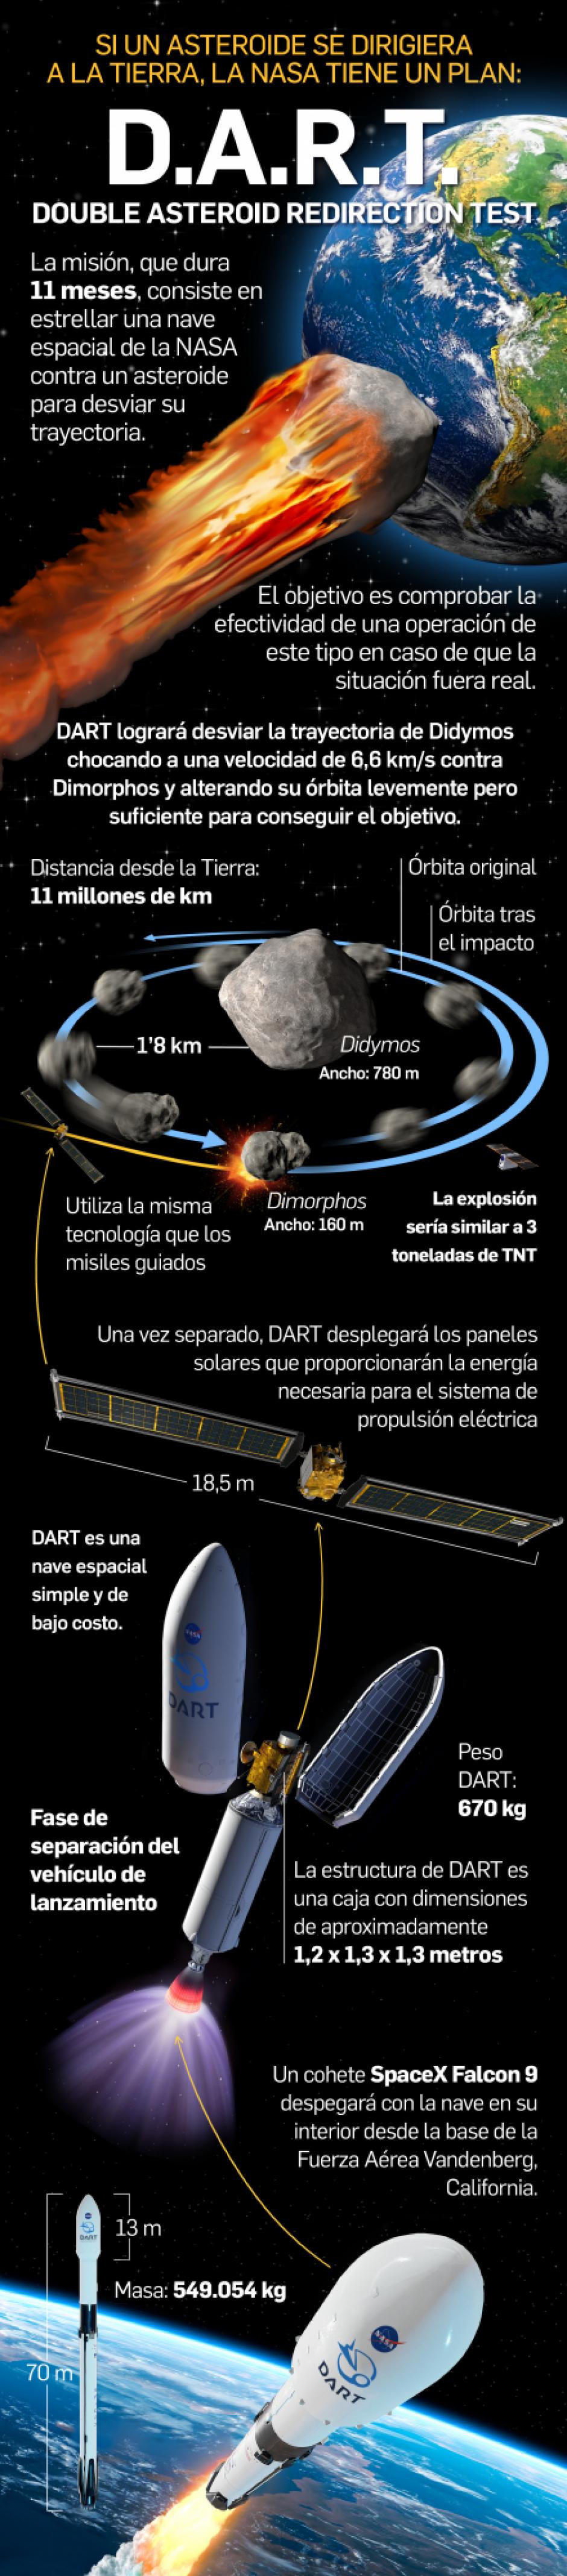 Infografía sobre la misión DART